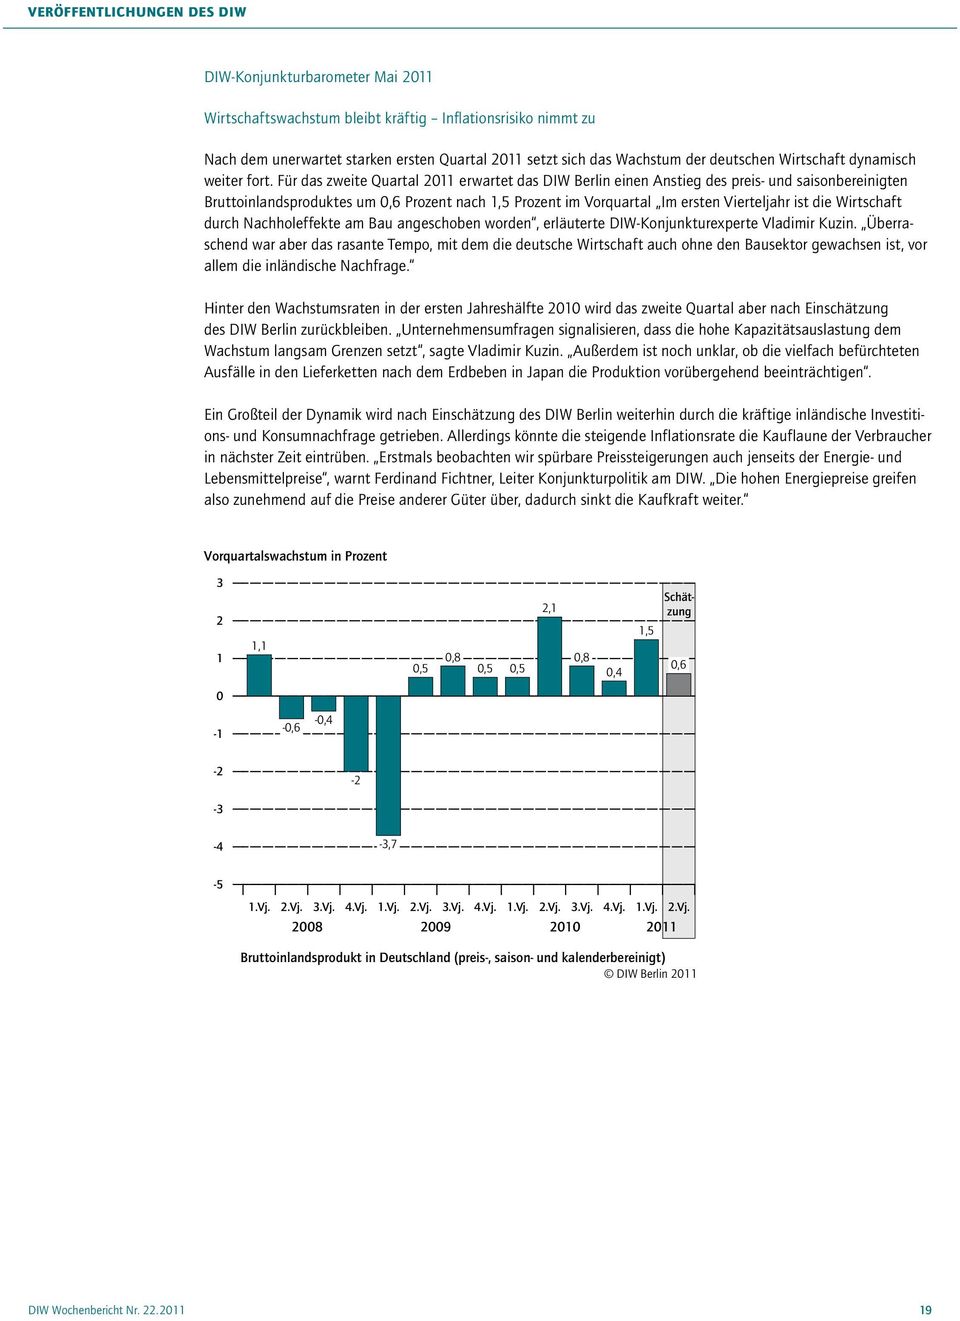 Für das zweite Quartal 2011 erwartet das DIW Berlin einen Anstieg des preis- und saisonbereinigten Bruttoinlandsproduktes um 0,6 Prozent nach 1,5 Prozent im Vorquartal Im ersten Vierteljahr ist die